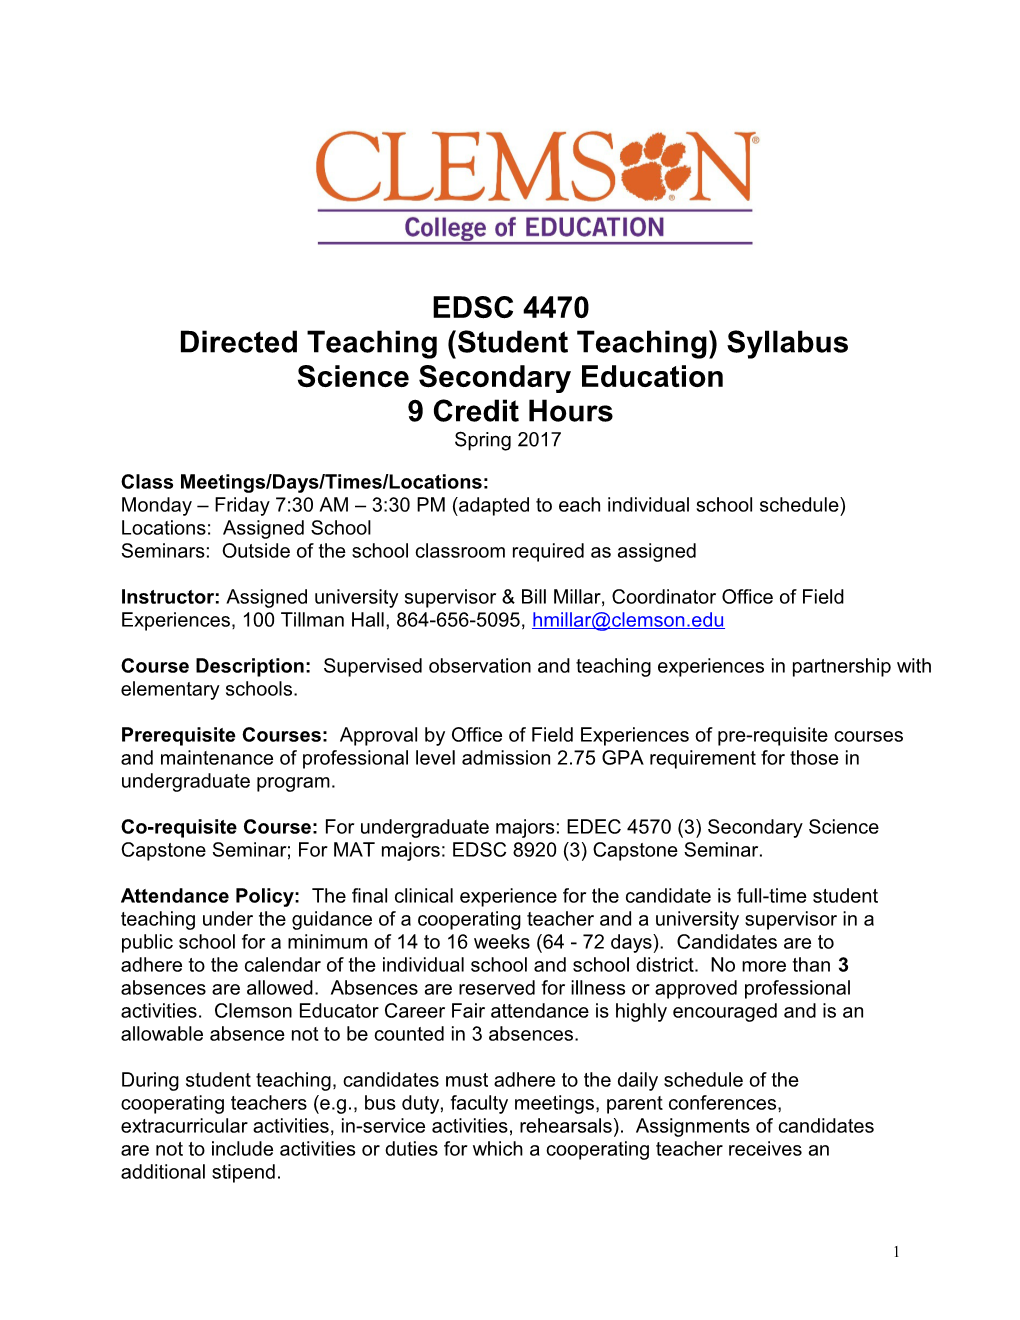 Directed Teaching (Student Teaching) Syllabus